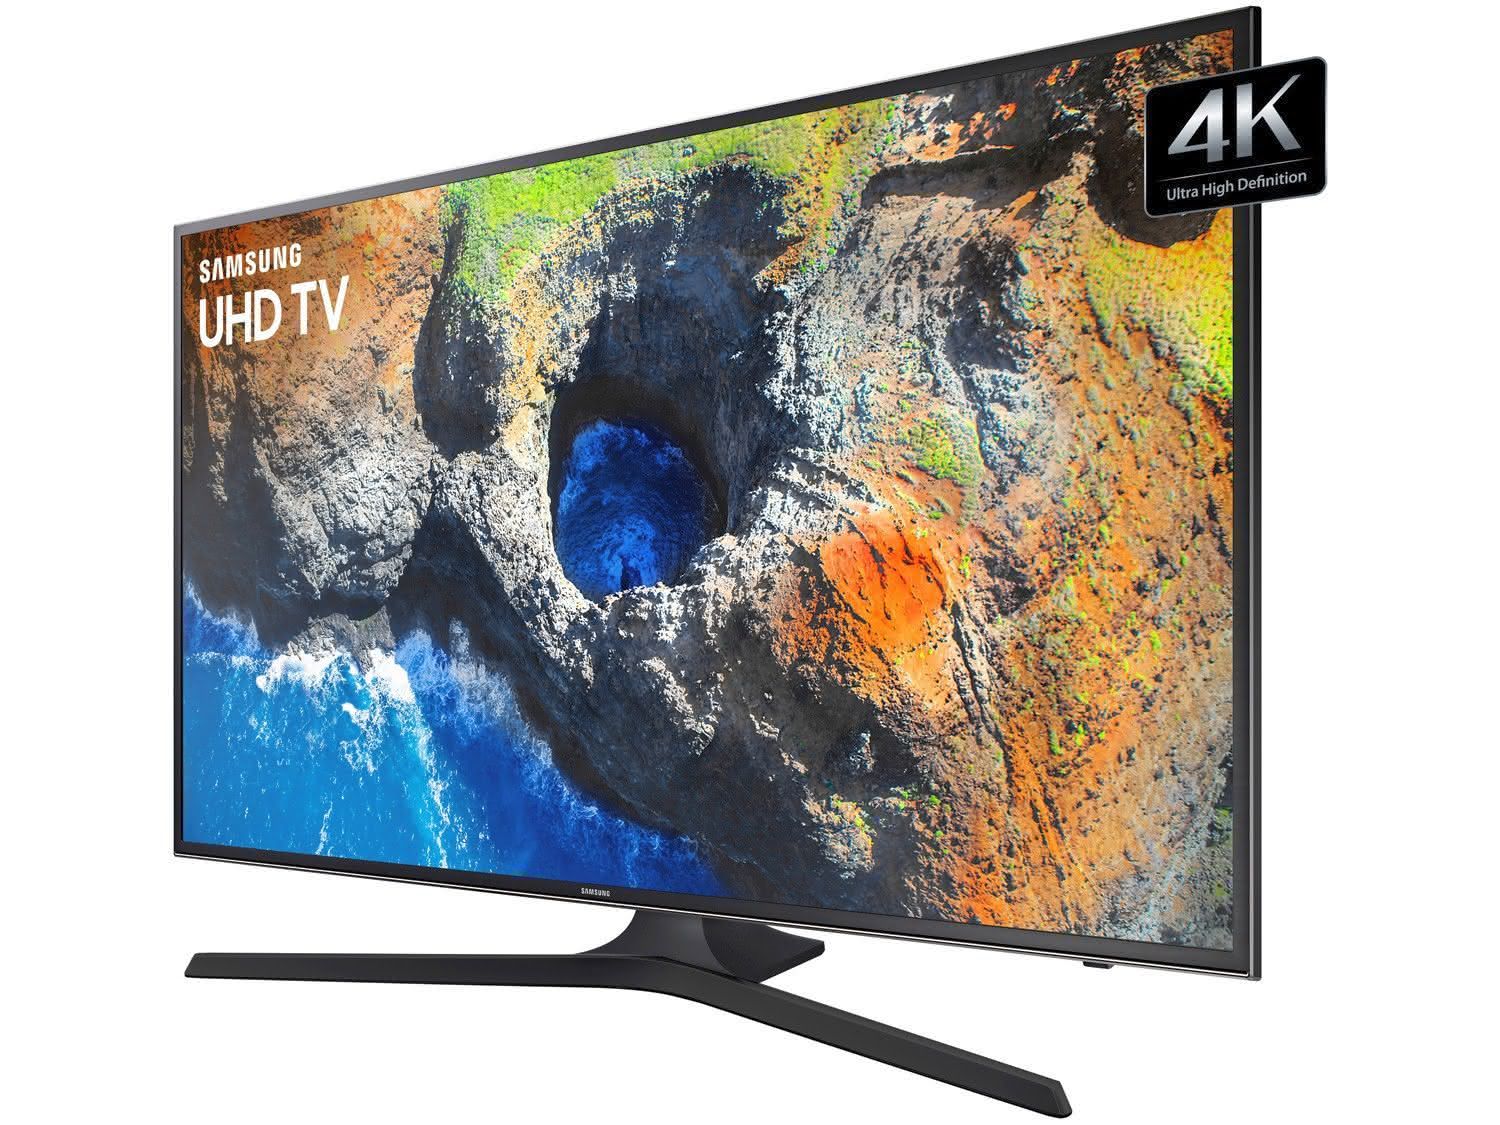 Smart TV LED 40″ UHD 4K Samsung 40MU6100 com HDR Premium, Plataforma Smart Tizen, Smart View, Espelhamento de Tela, Steam Link, 3 HDMI e 2 USB